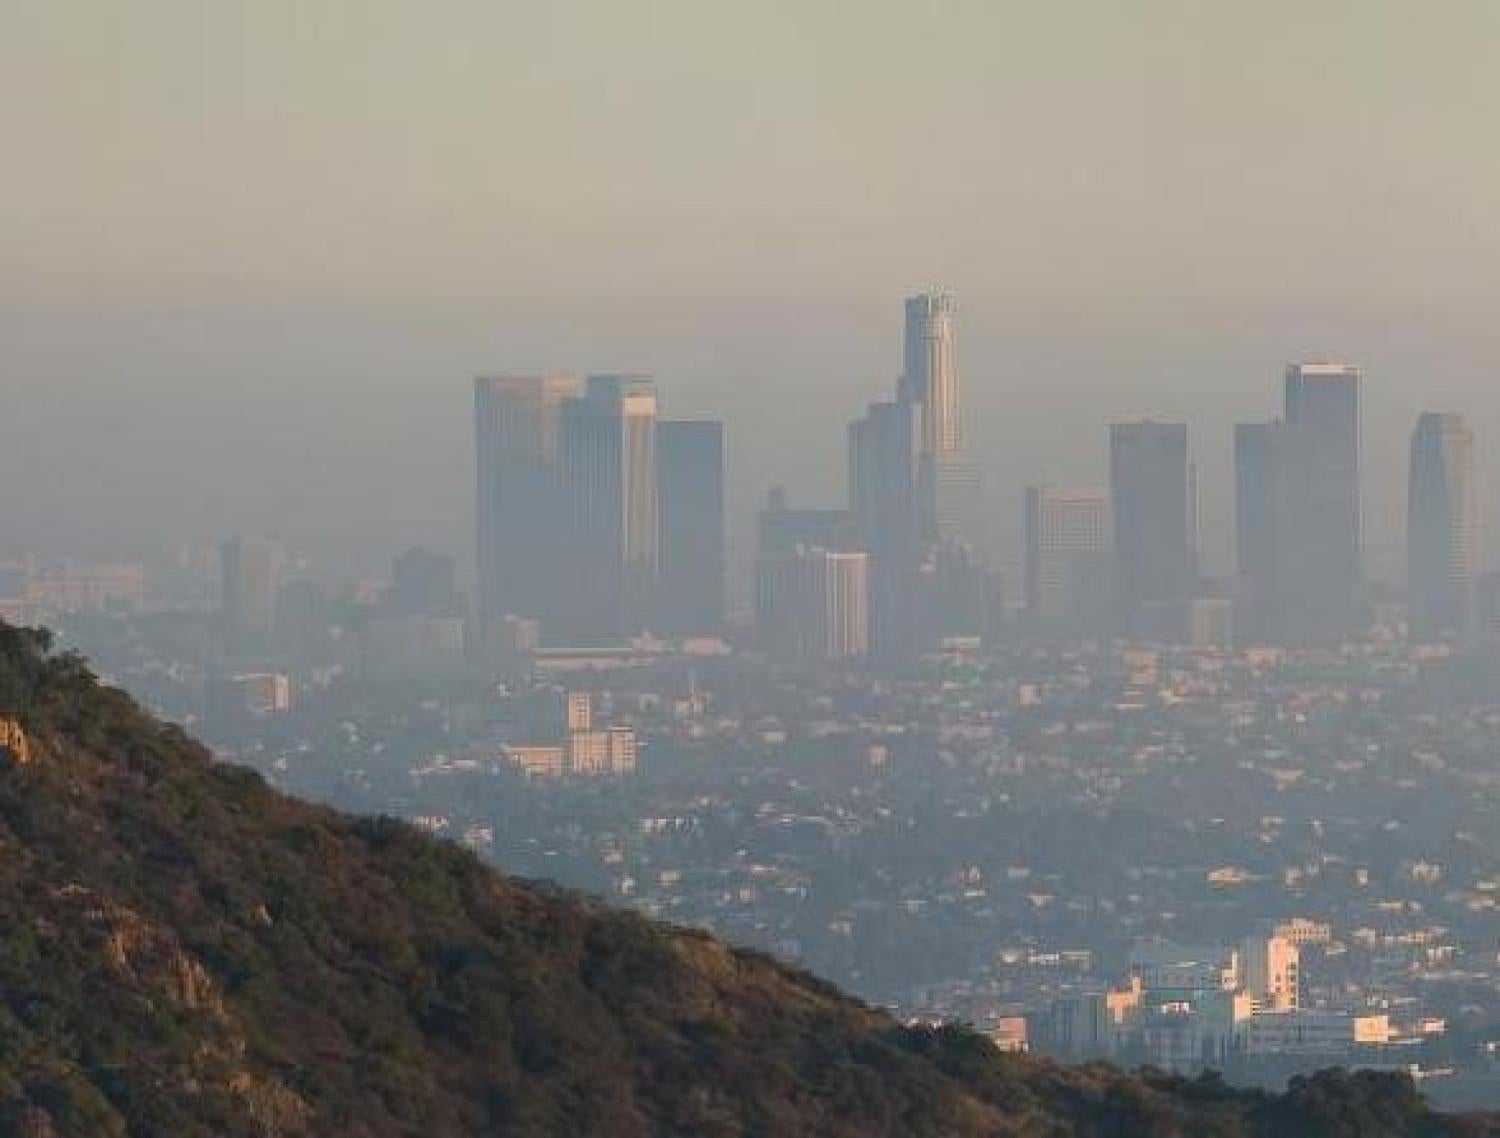 L.A. smog